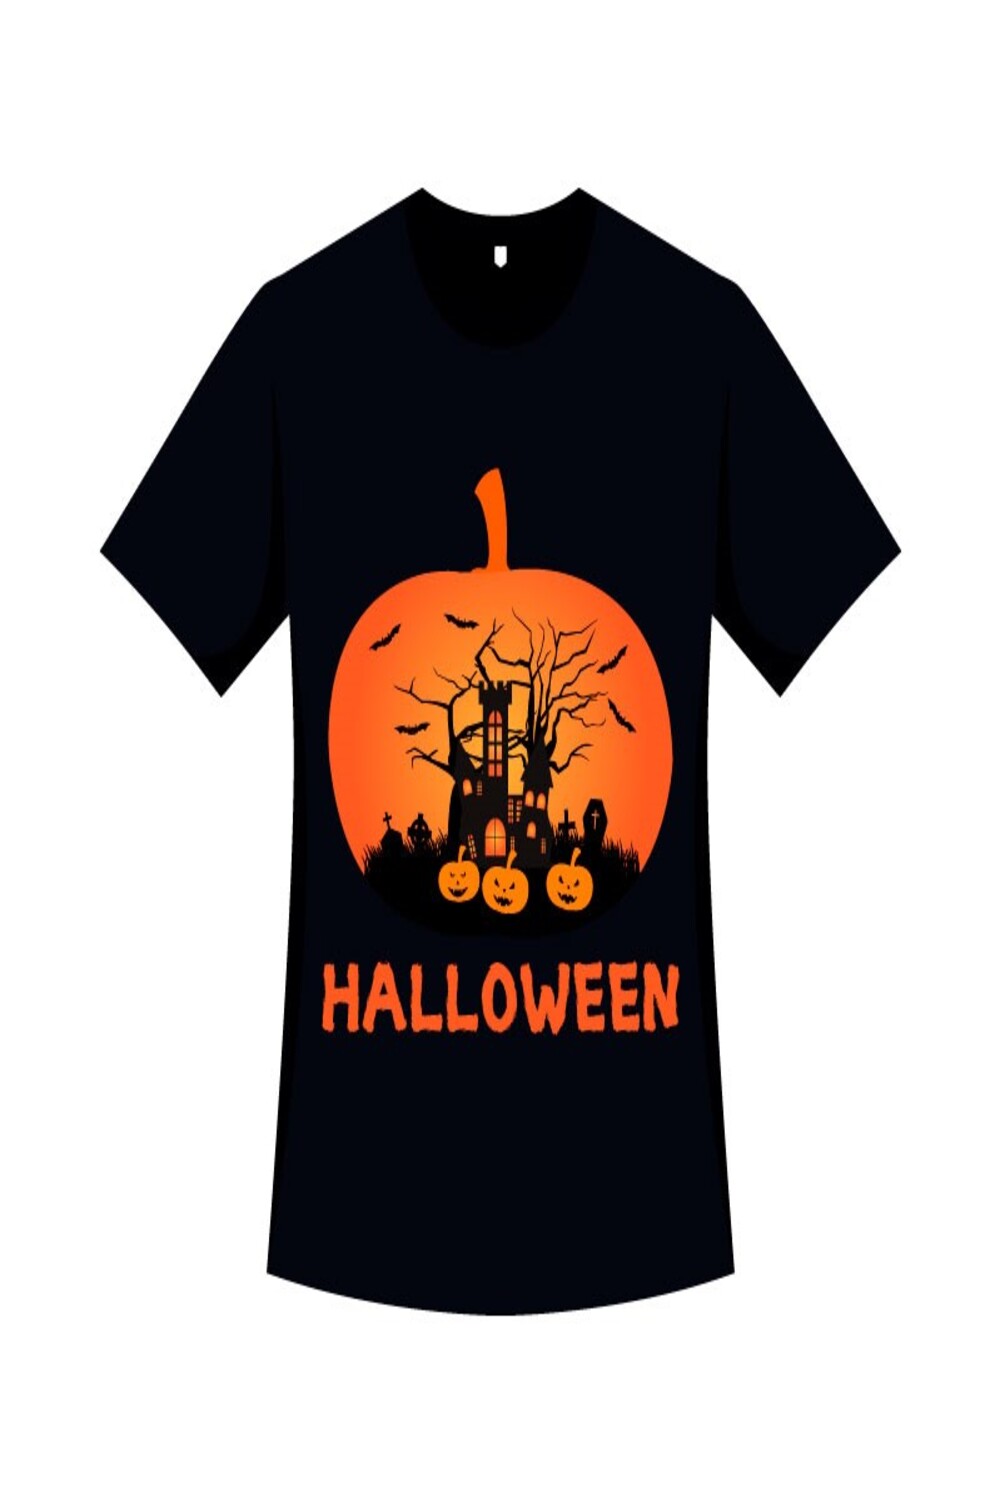 Halloween Horrifying T-shirt Design pinterest image.